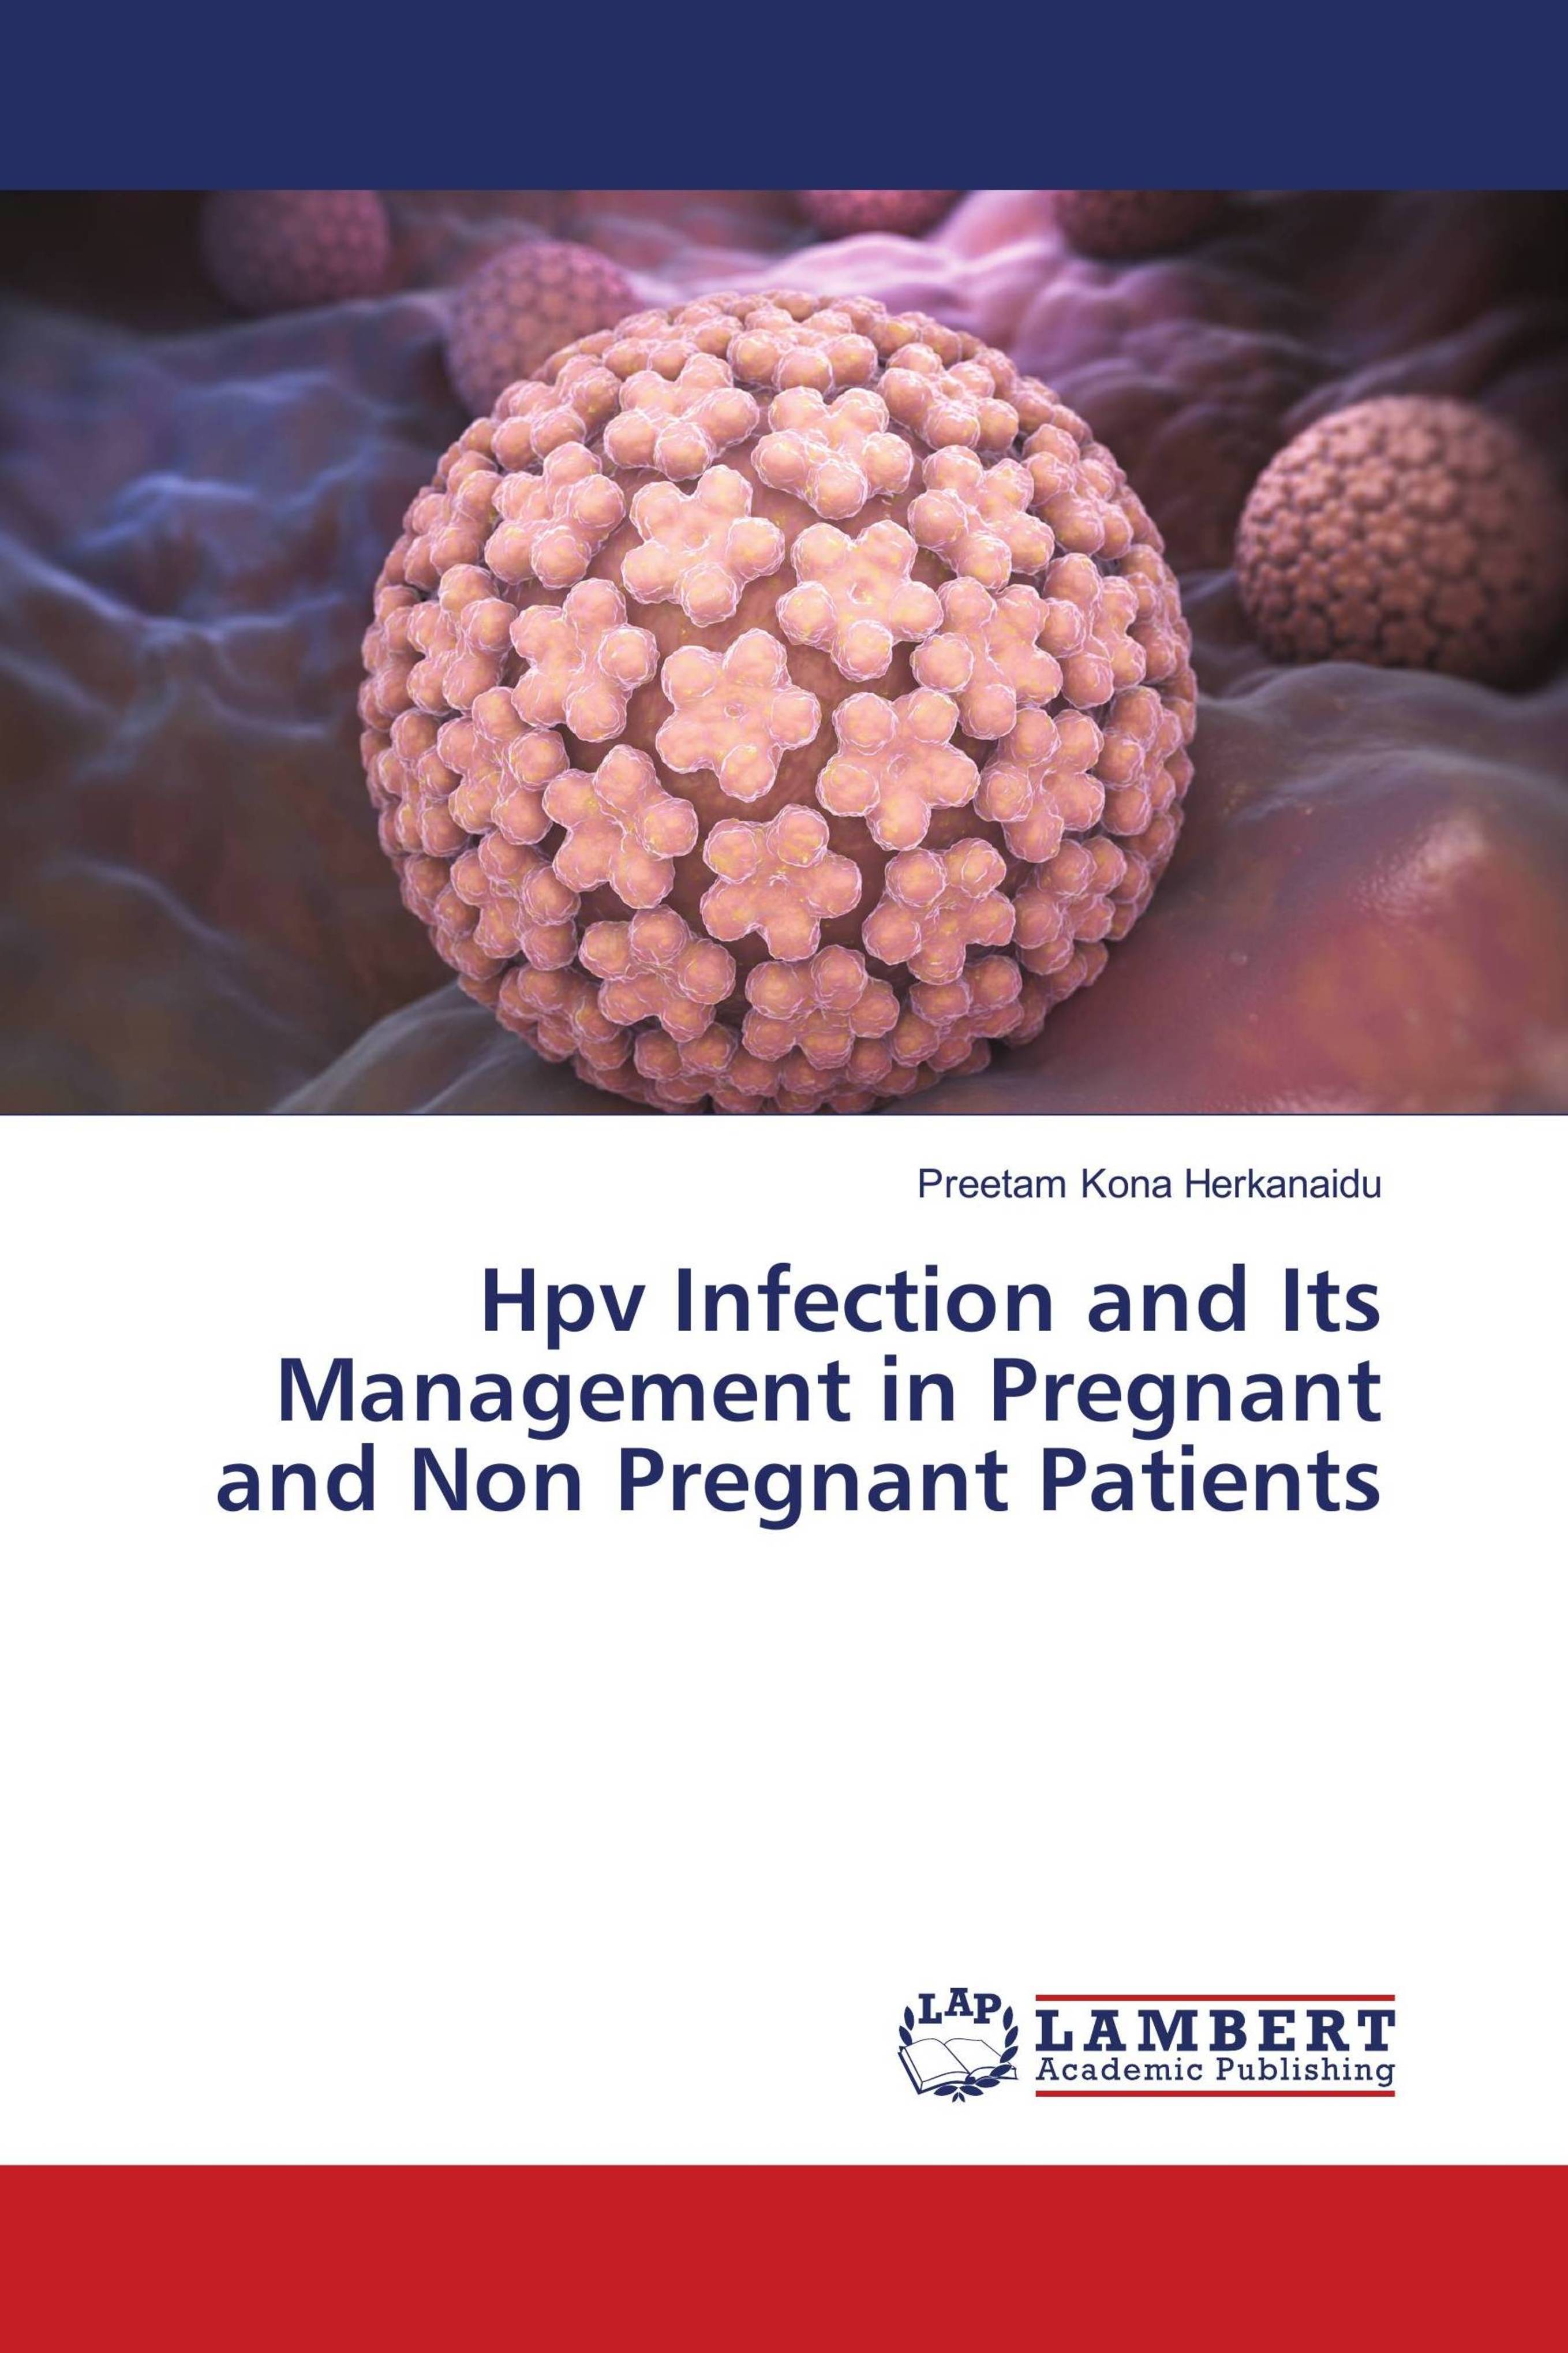 Human papillomavirus infection during pregnancy - Human papillomavirus infection and pregnancy